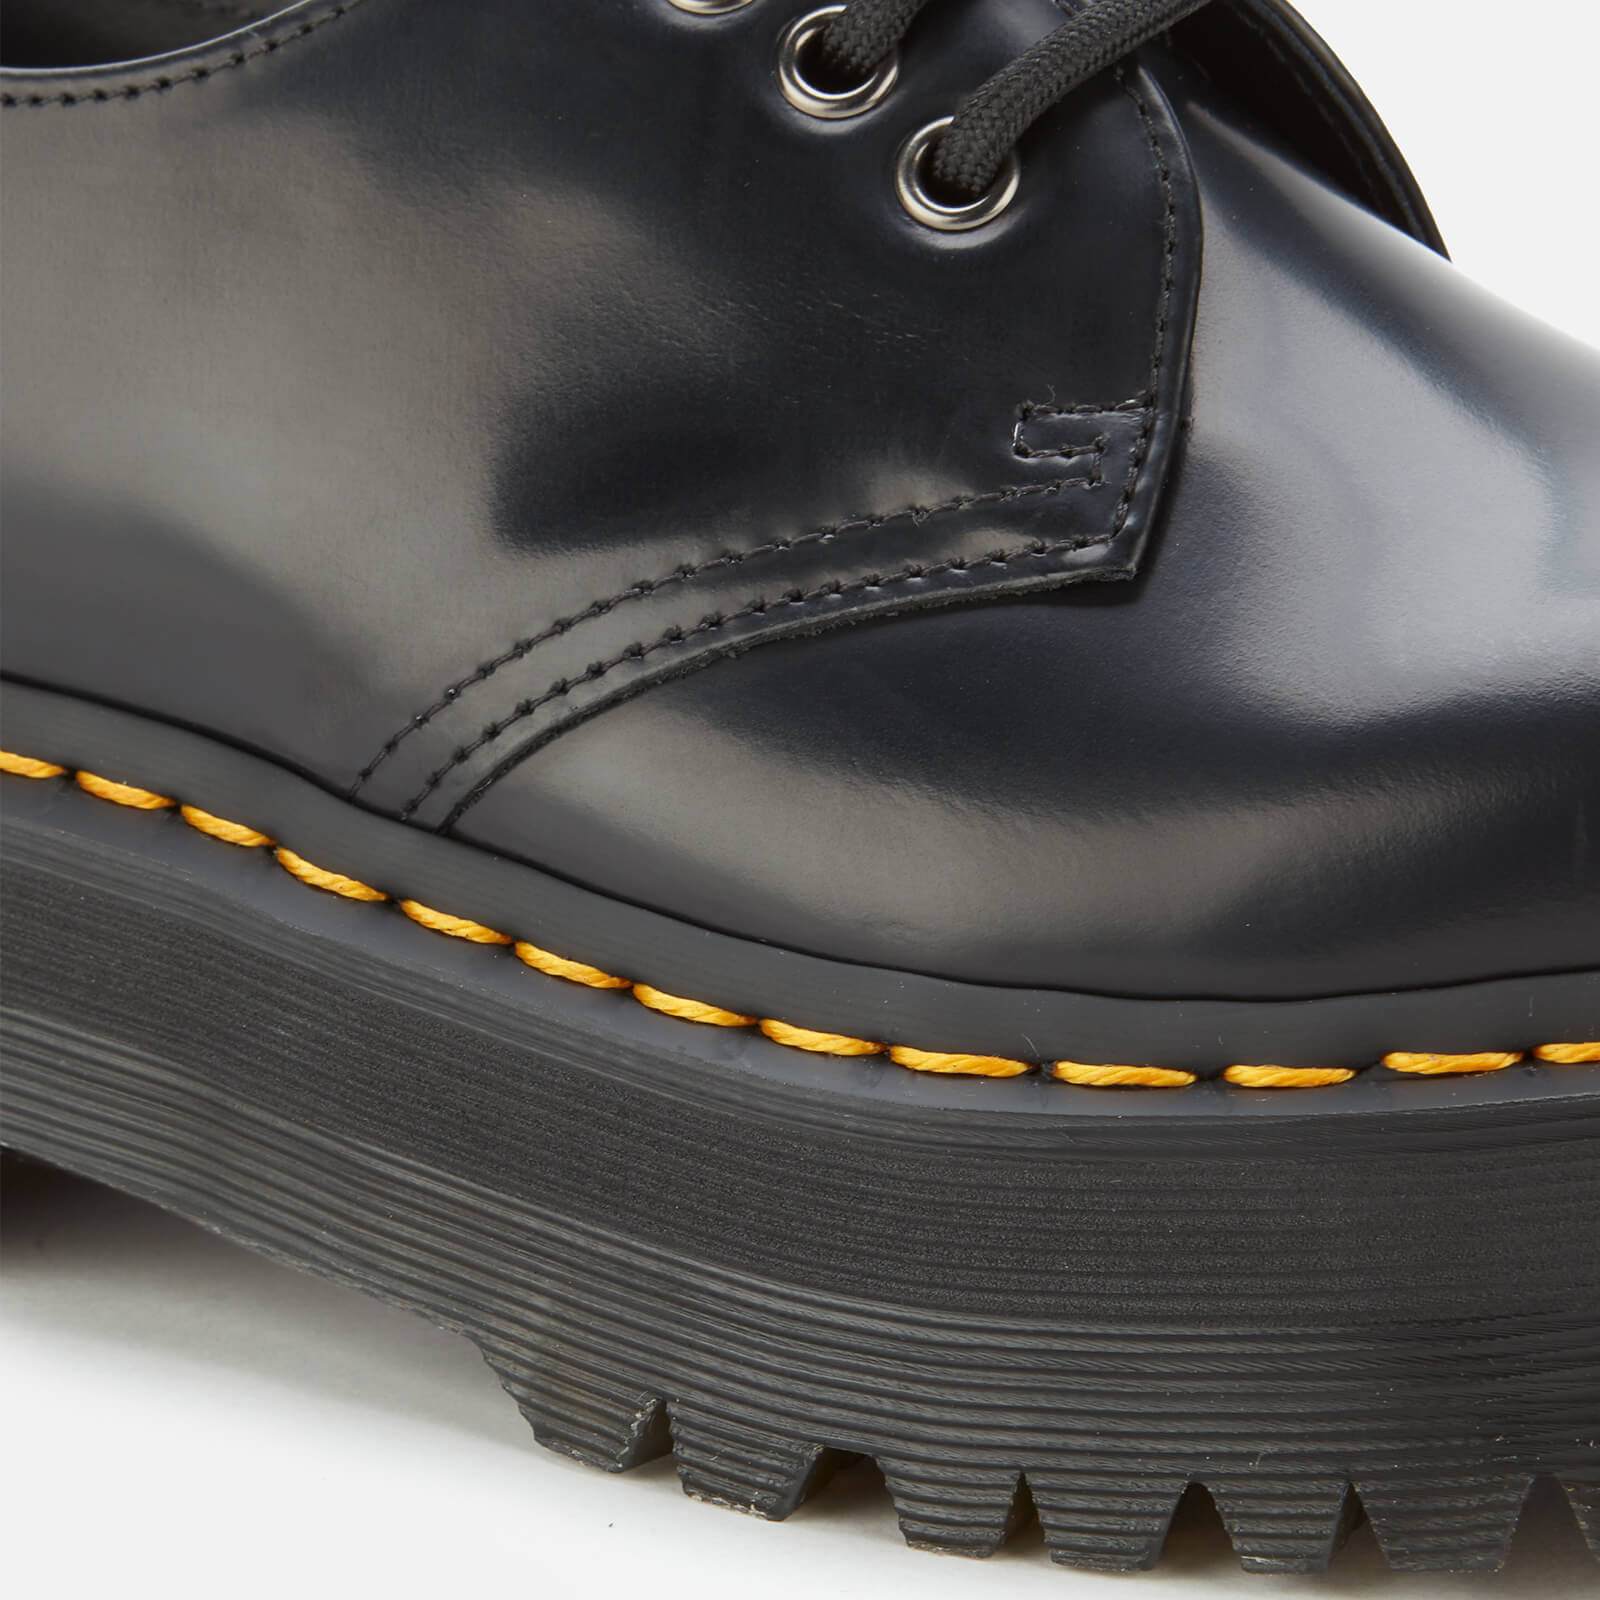 Dr. Martens 1461 Quad Leather 3-Eye Shoes - Black - UK 8